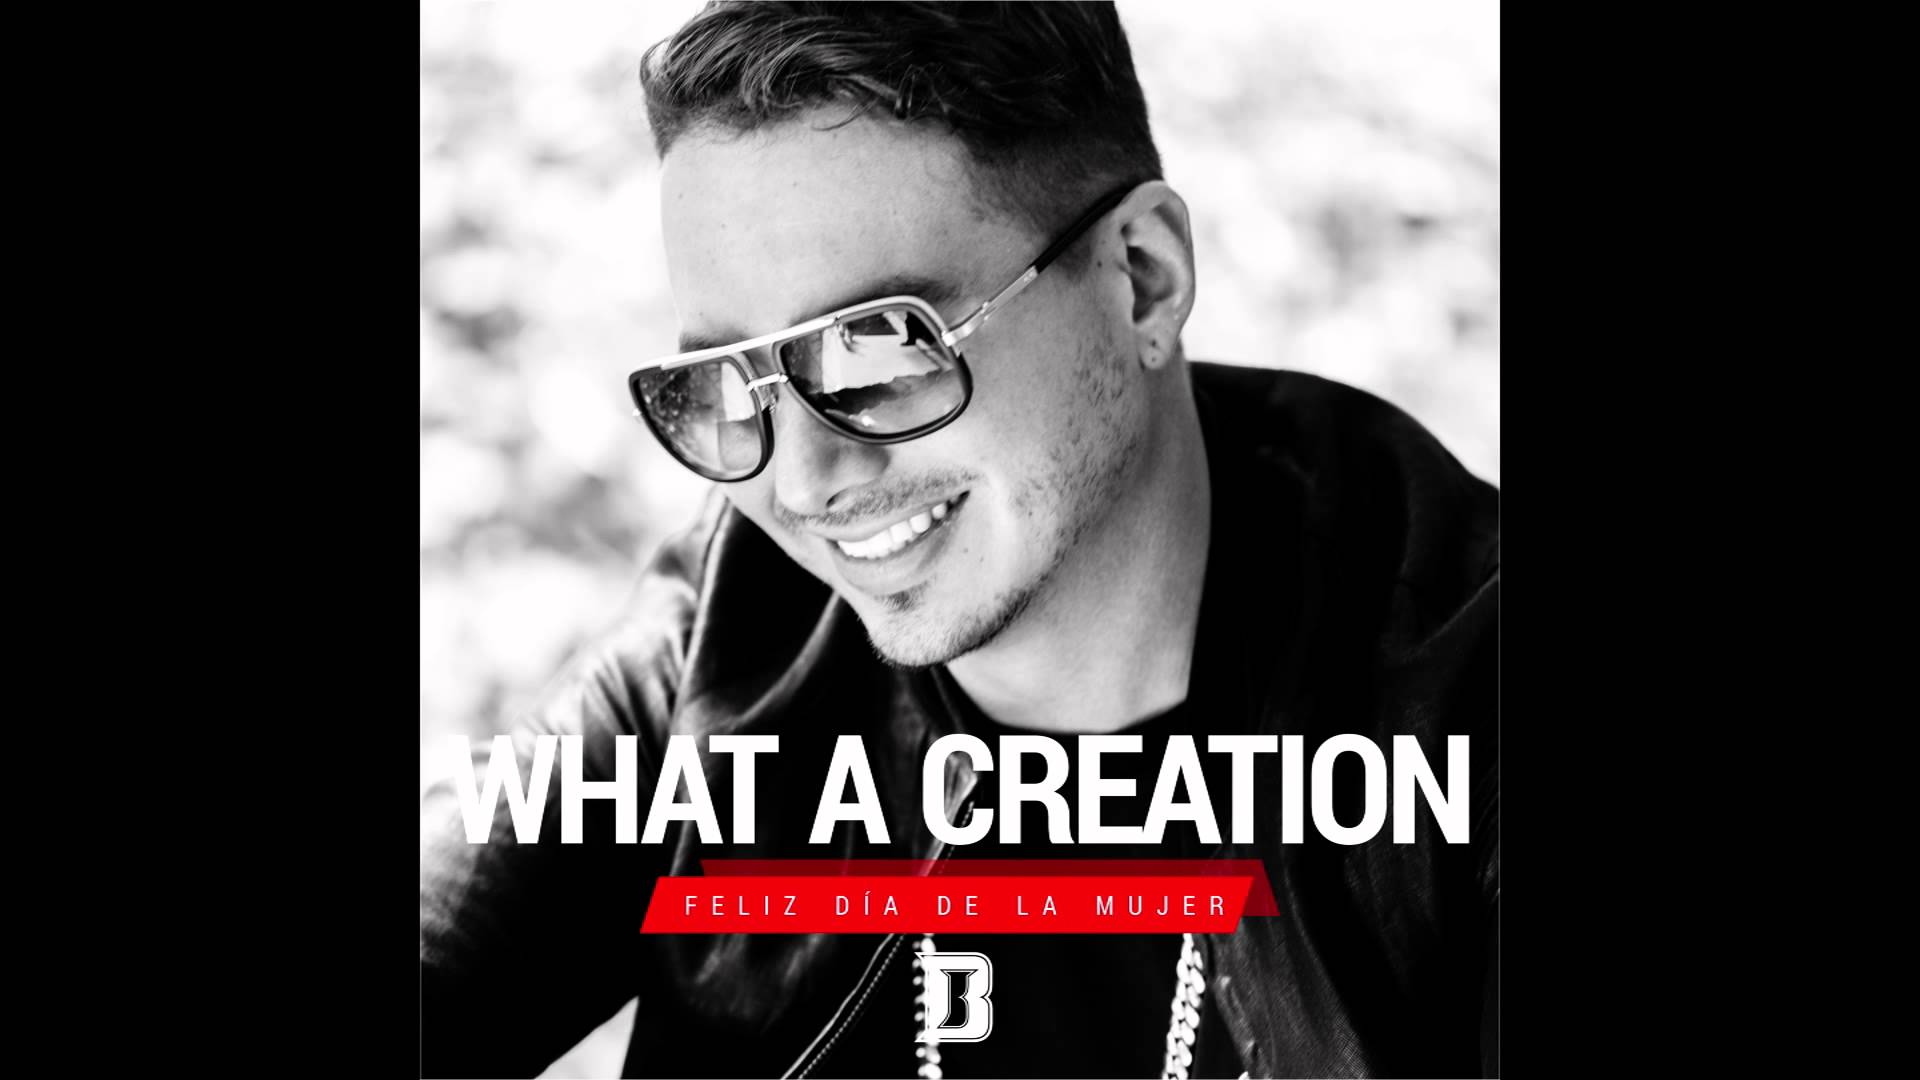 J Balvin - What A Creation